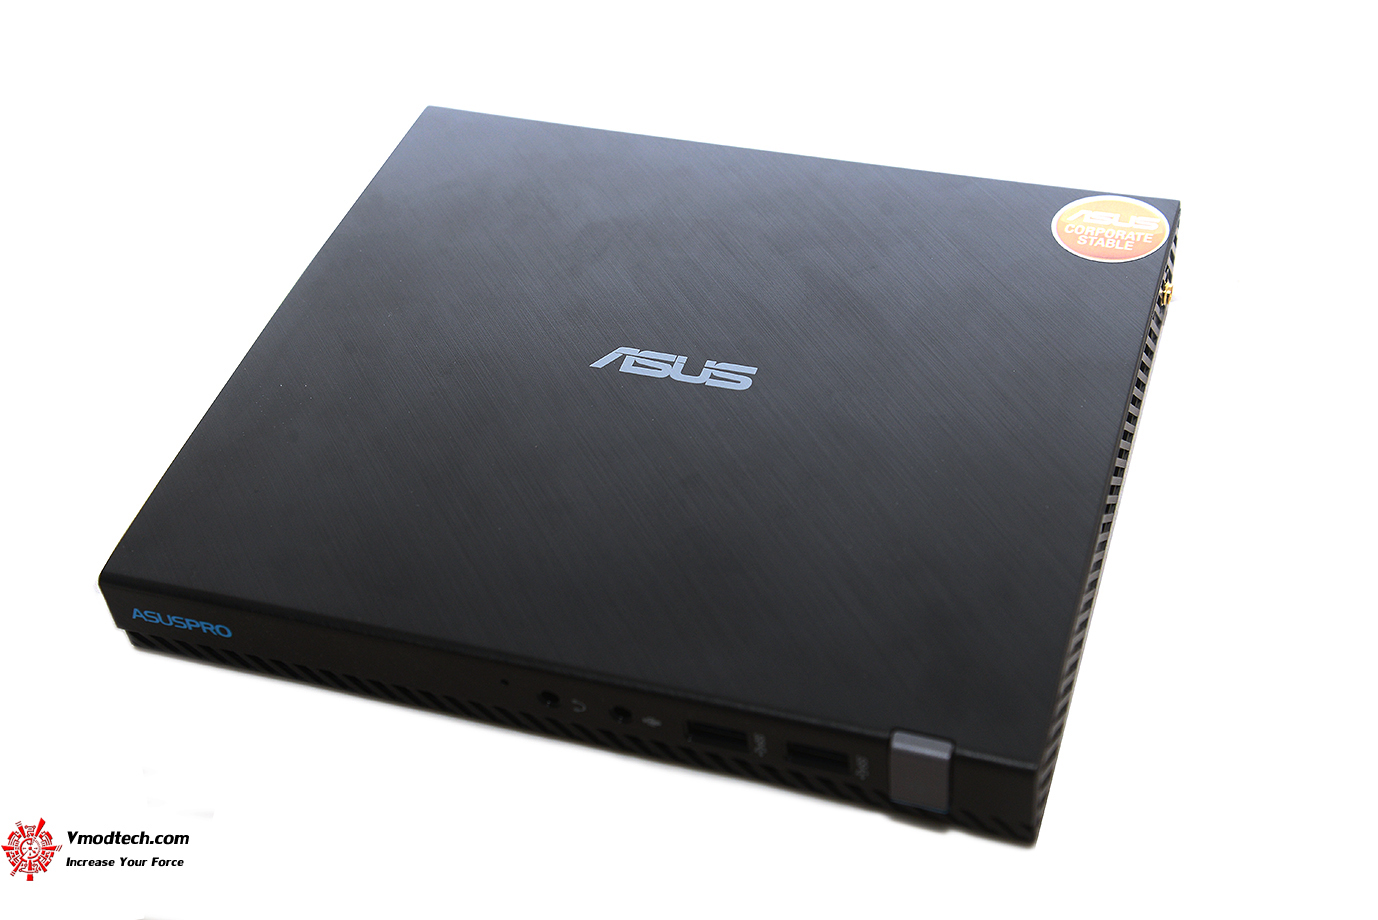 dsc 95601 ASUSPRO E520 B123Z/CSM Ultra Slim Mini PC Review 